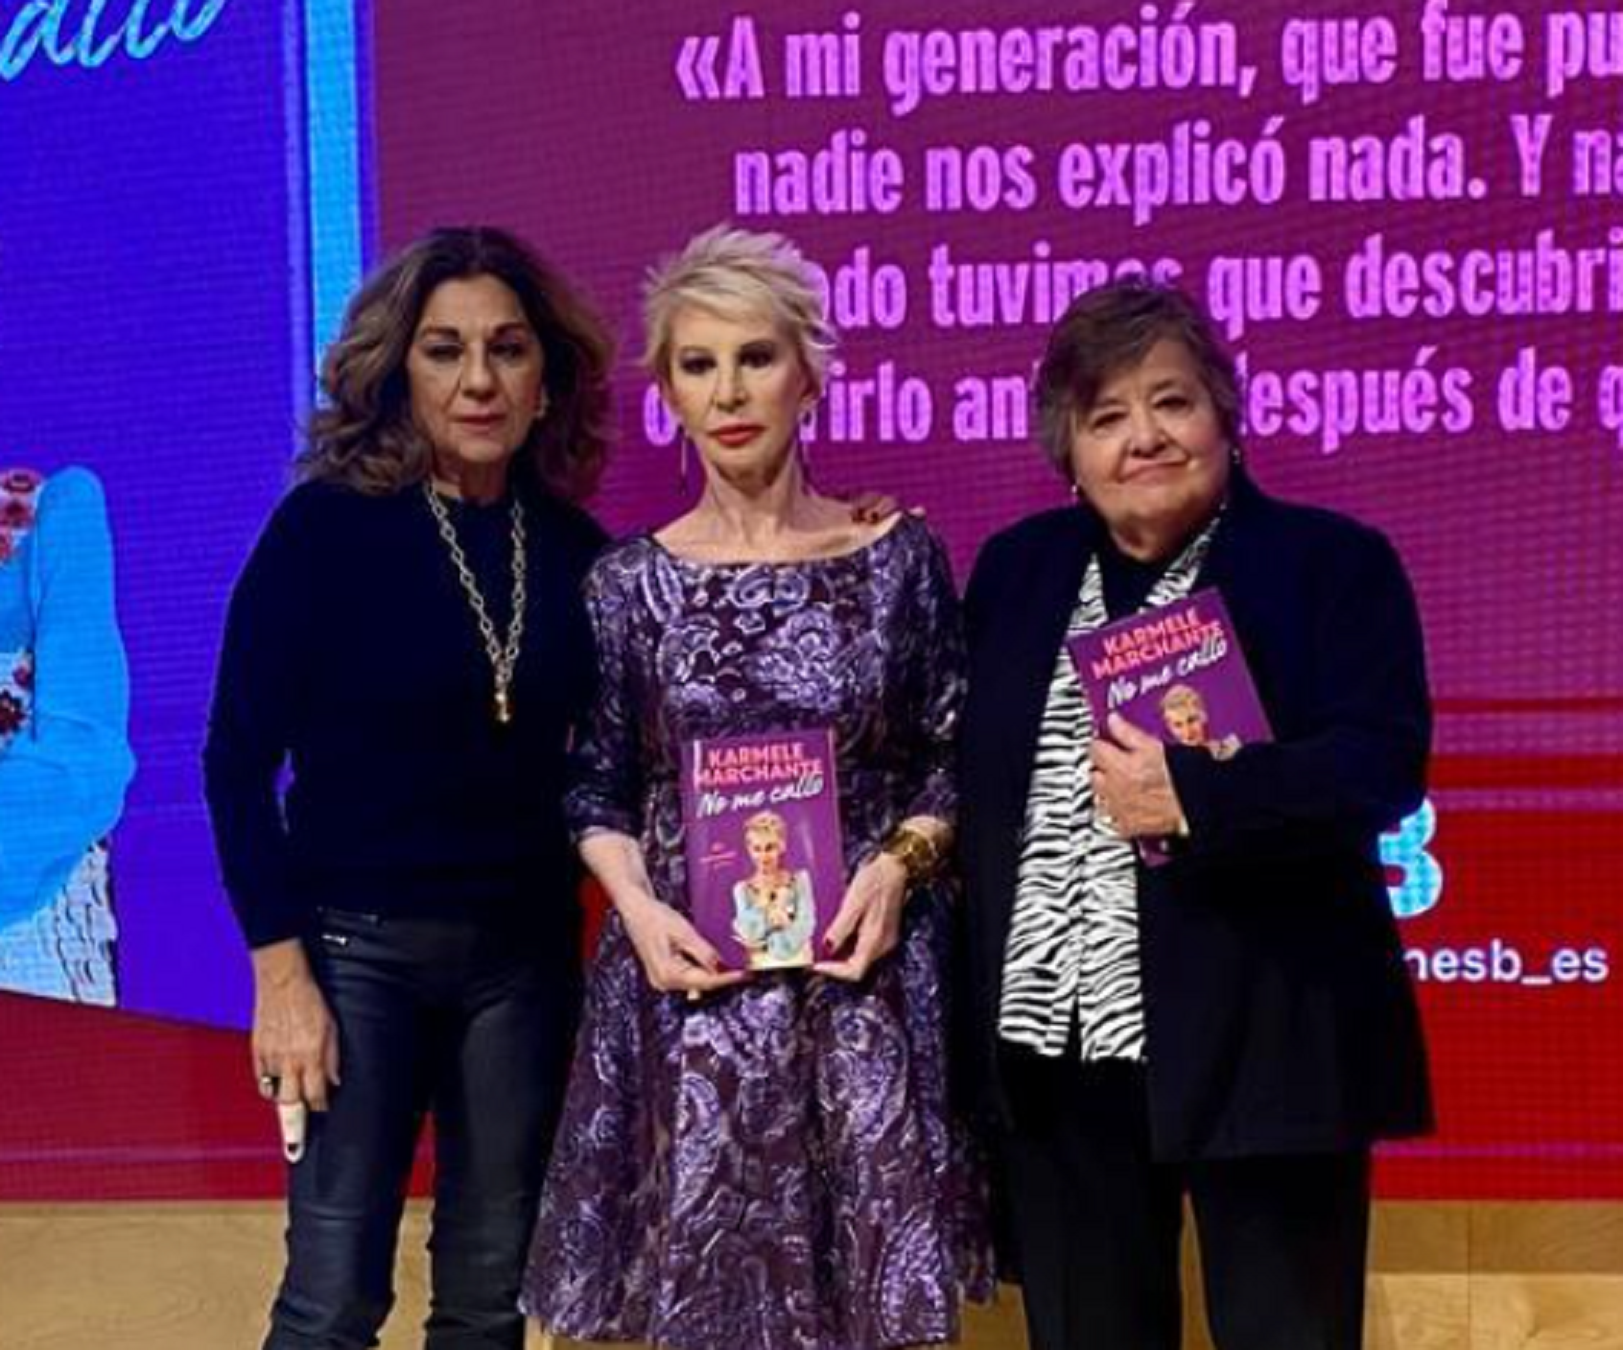 Karmele Marchante, Llolita Flores y Carmen Almeida, ayer